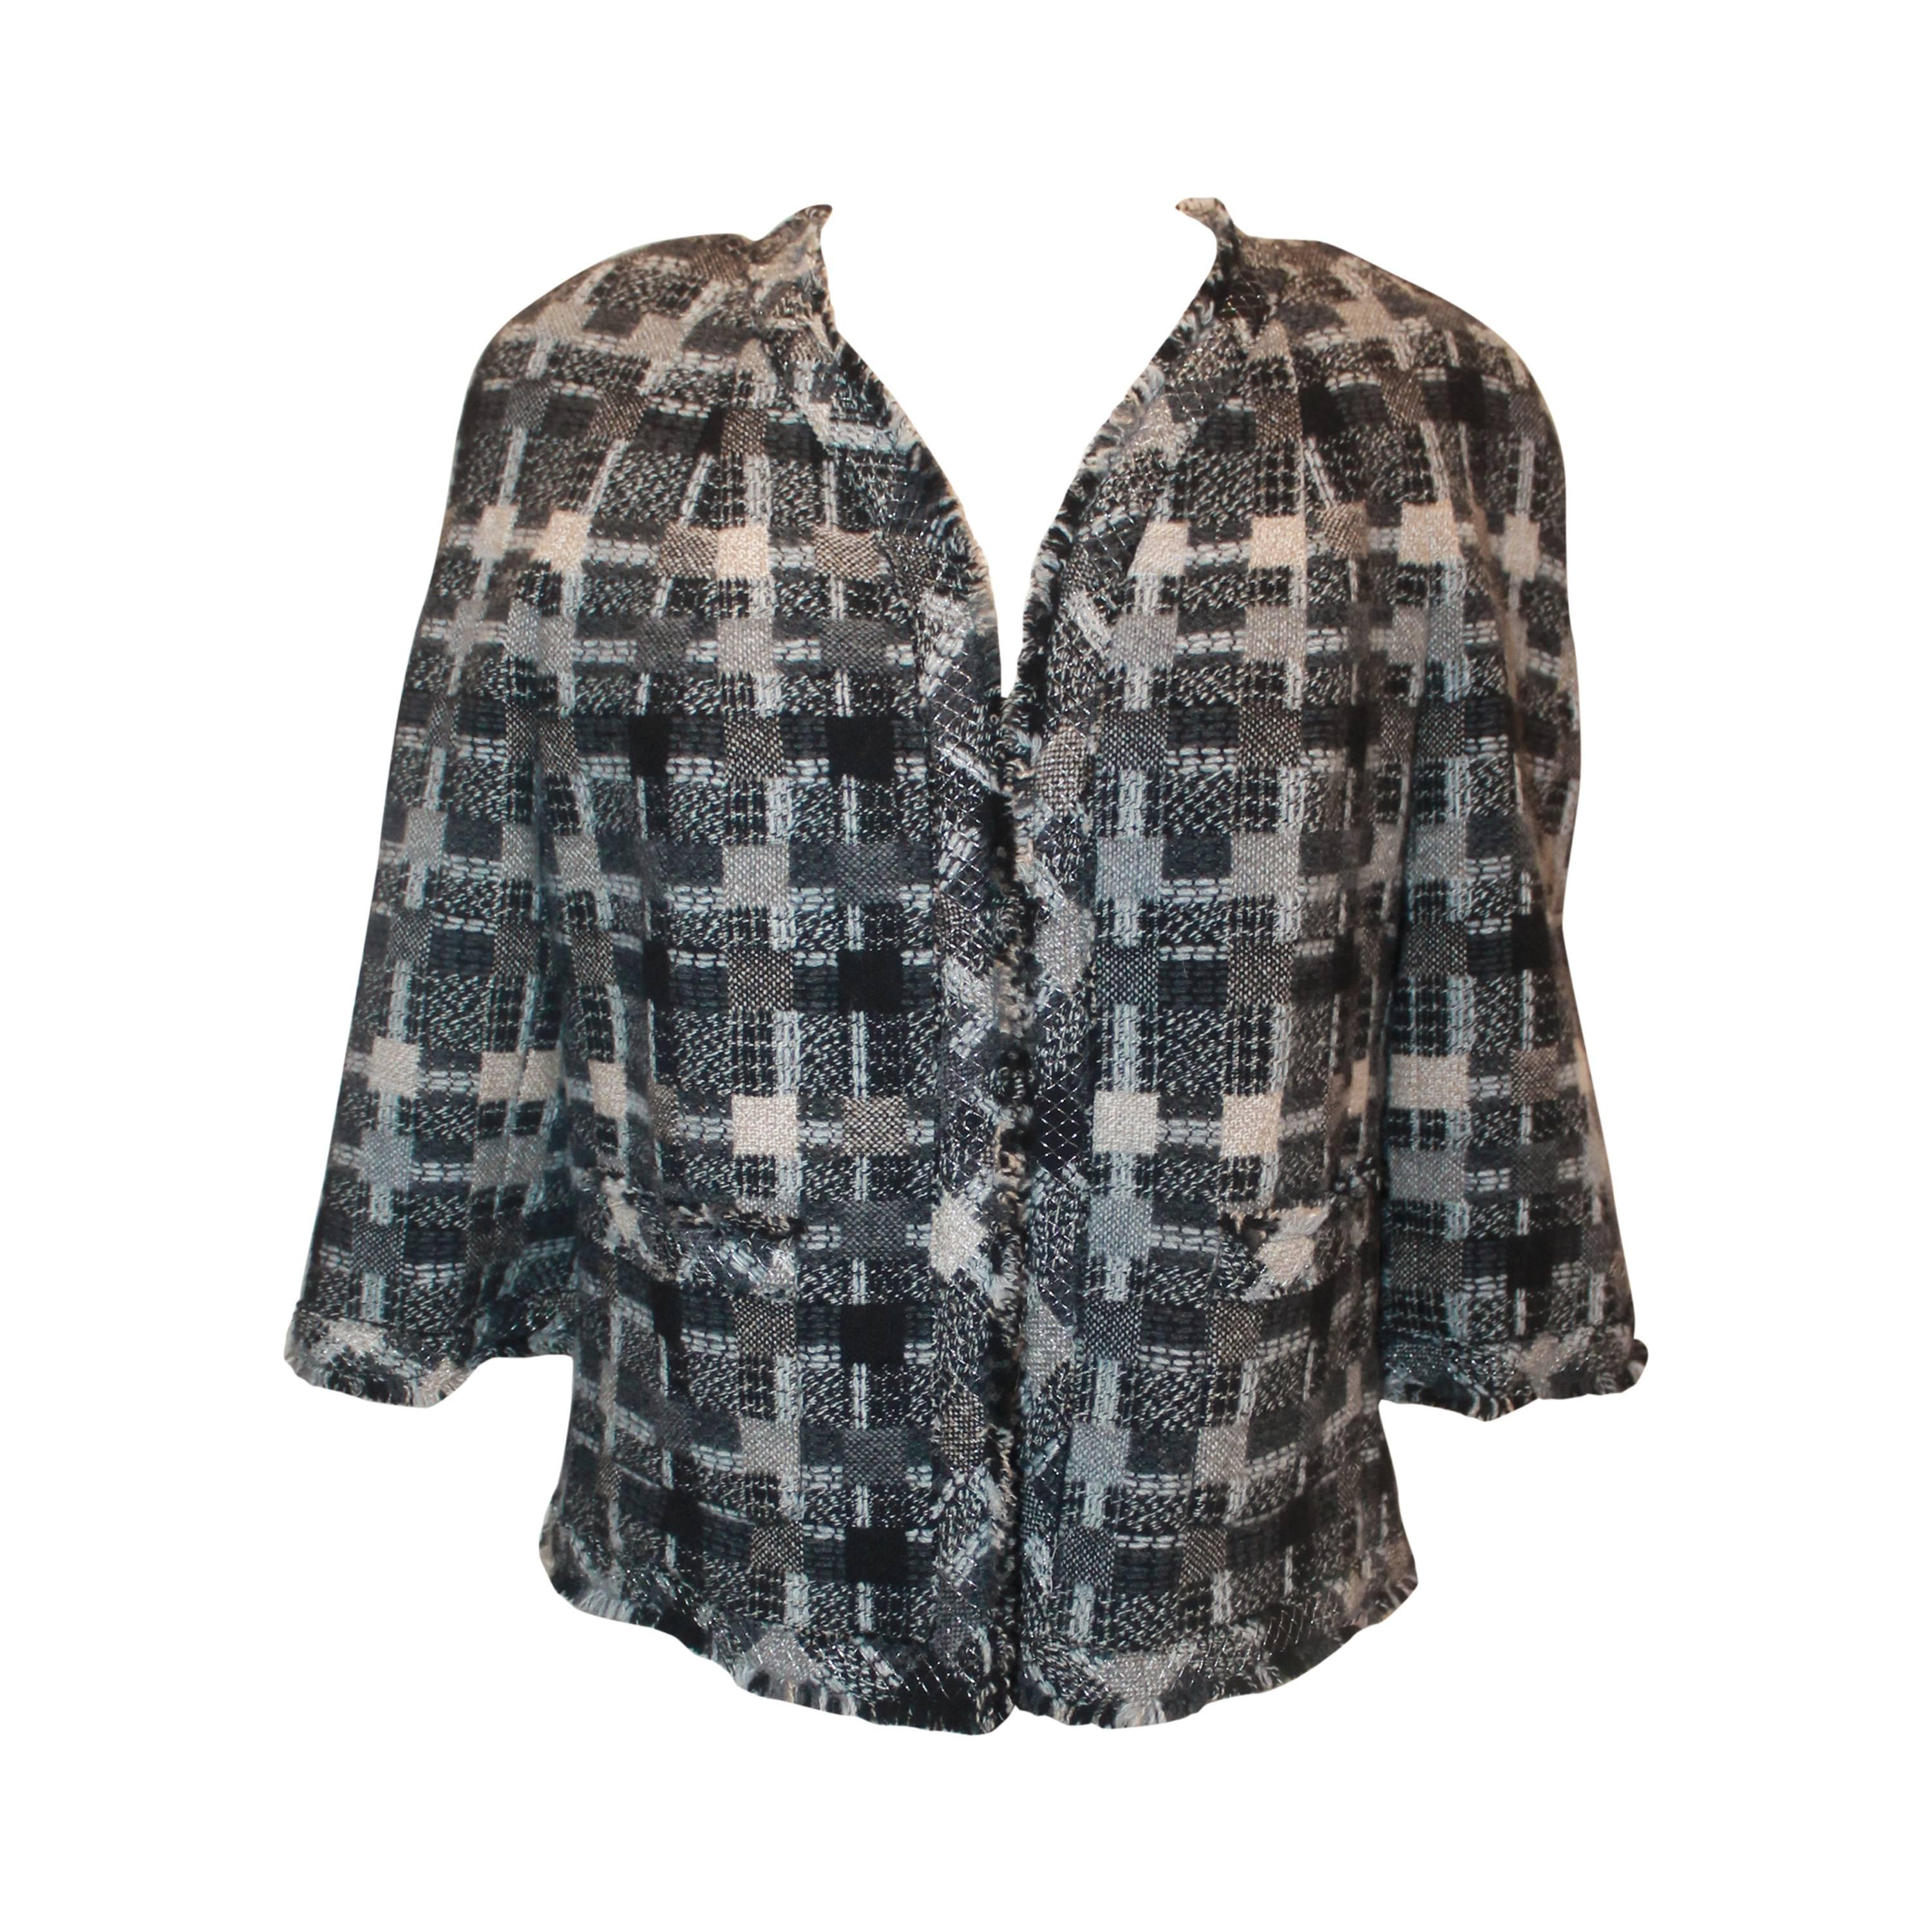 Chanel Graue Tweed-Jacke mit Criss-Cross-Muster und offener Vorderseite - 05A - 42